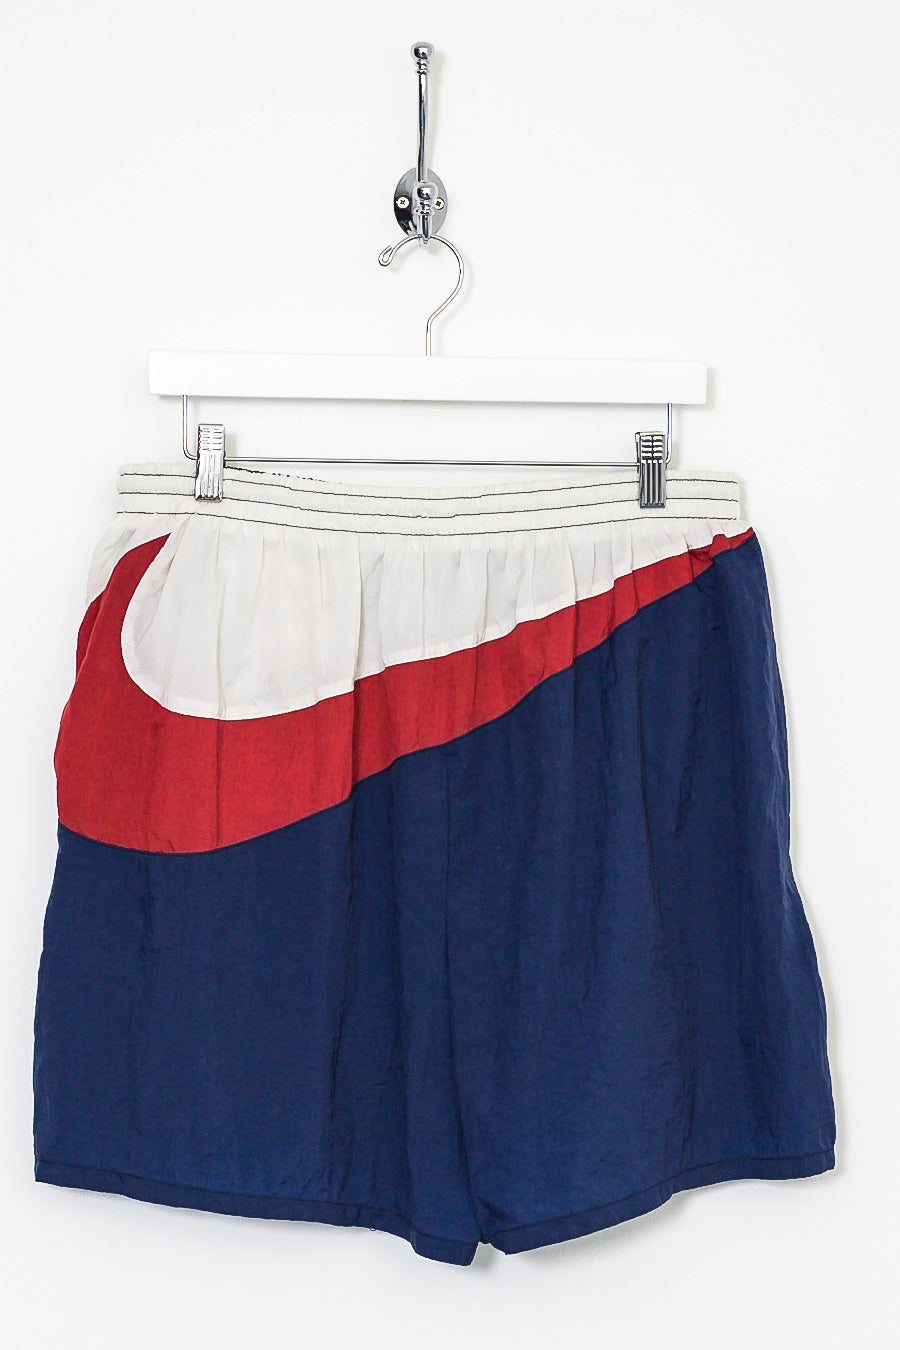 90s Nike Swoosh Shorts (L)